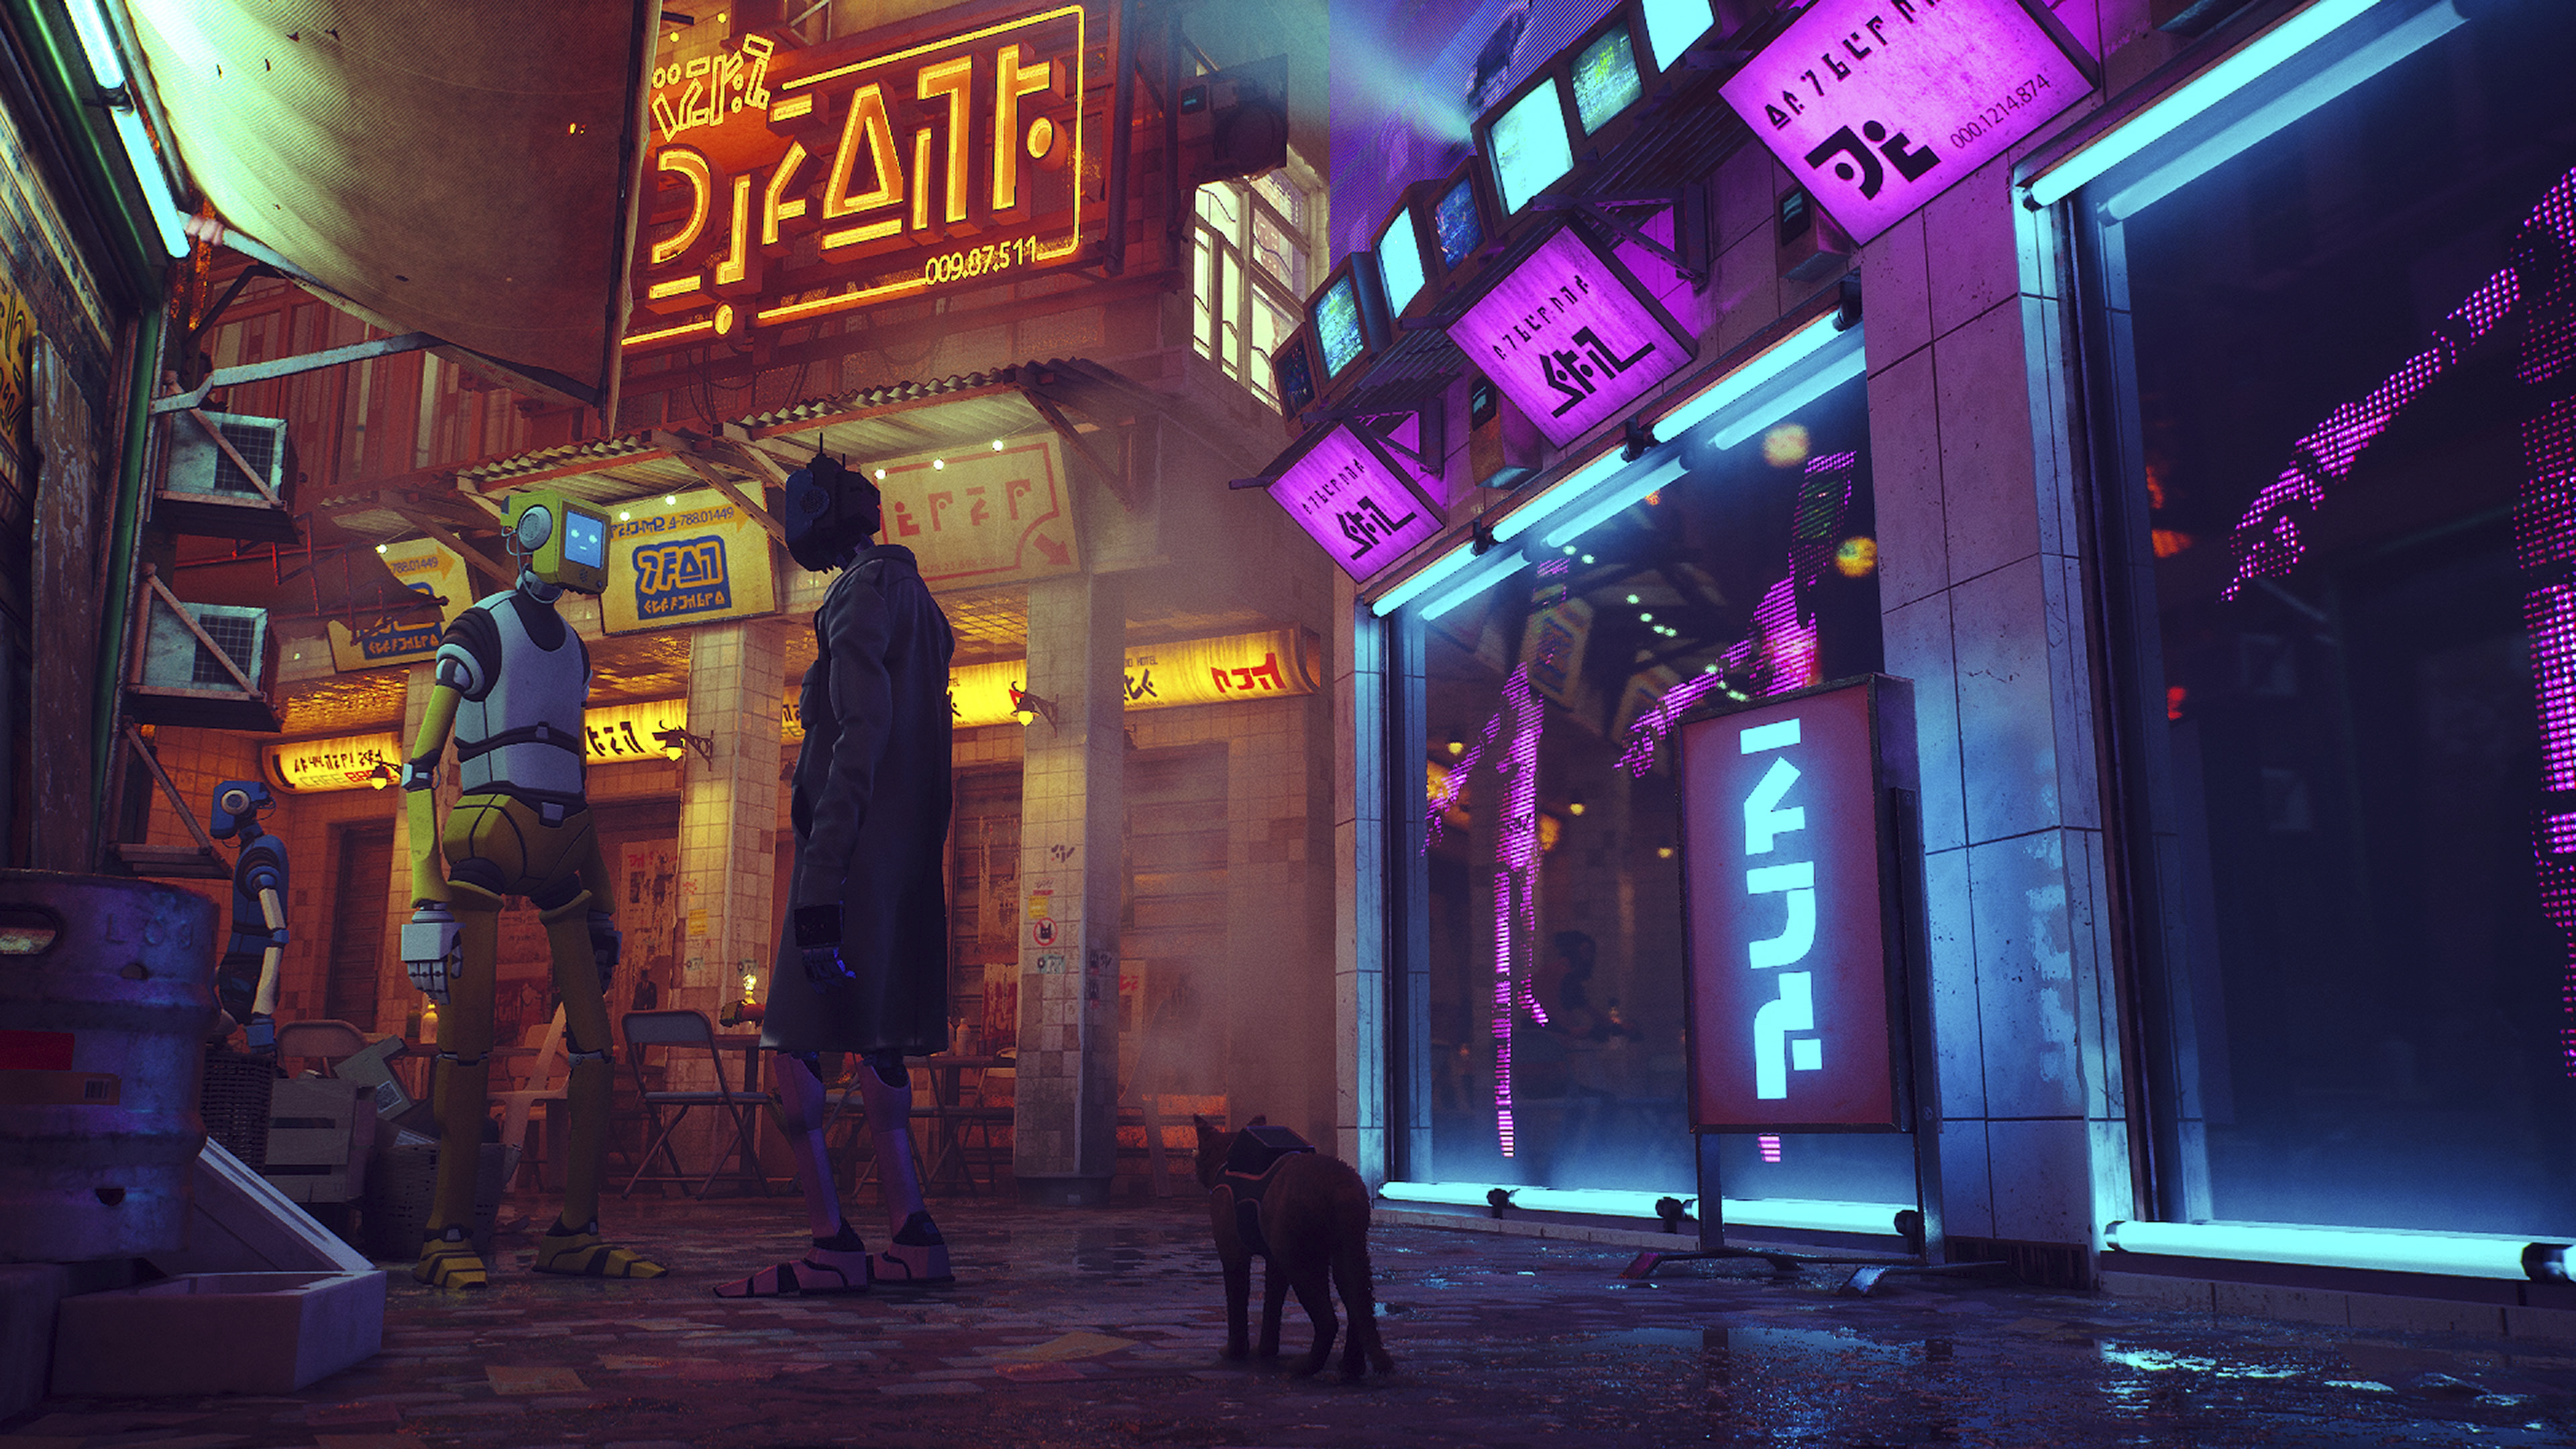 Snímka obrazovky z hry Stray zachytávajúca neónami osvetlenú ulicu